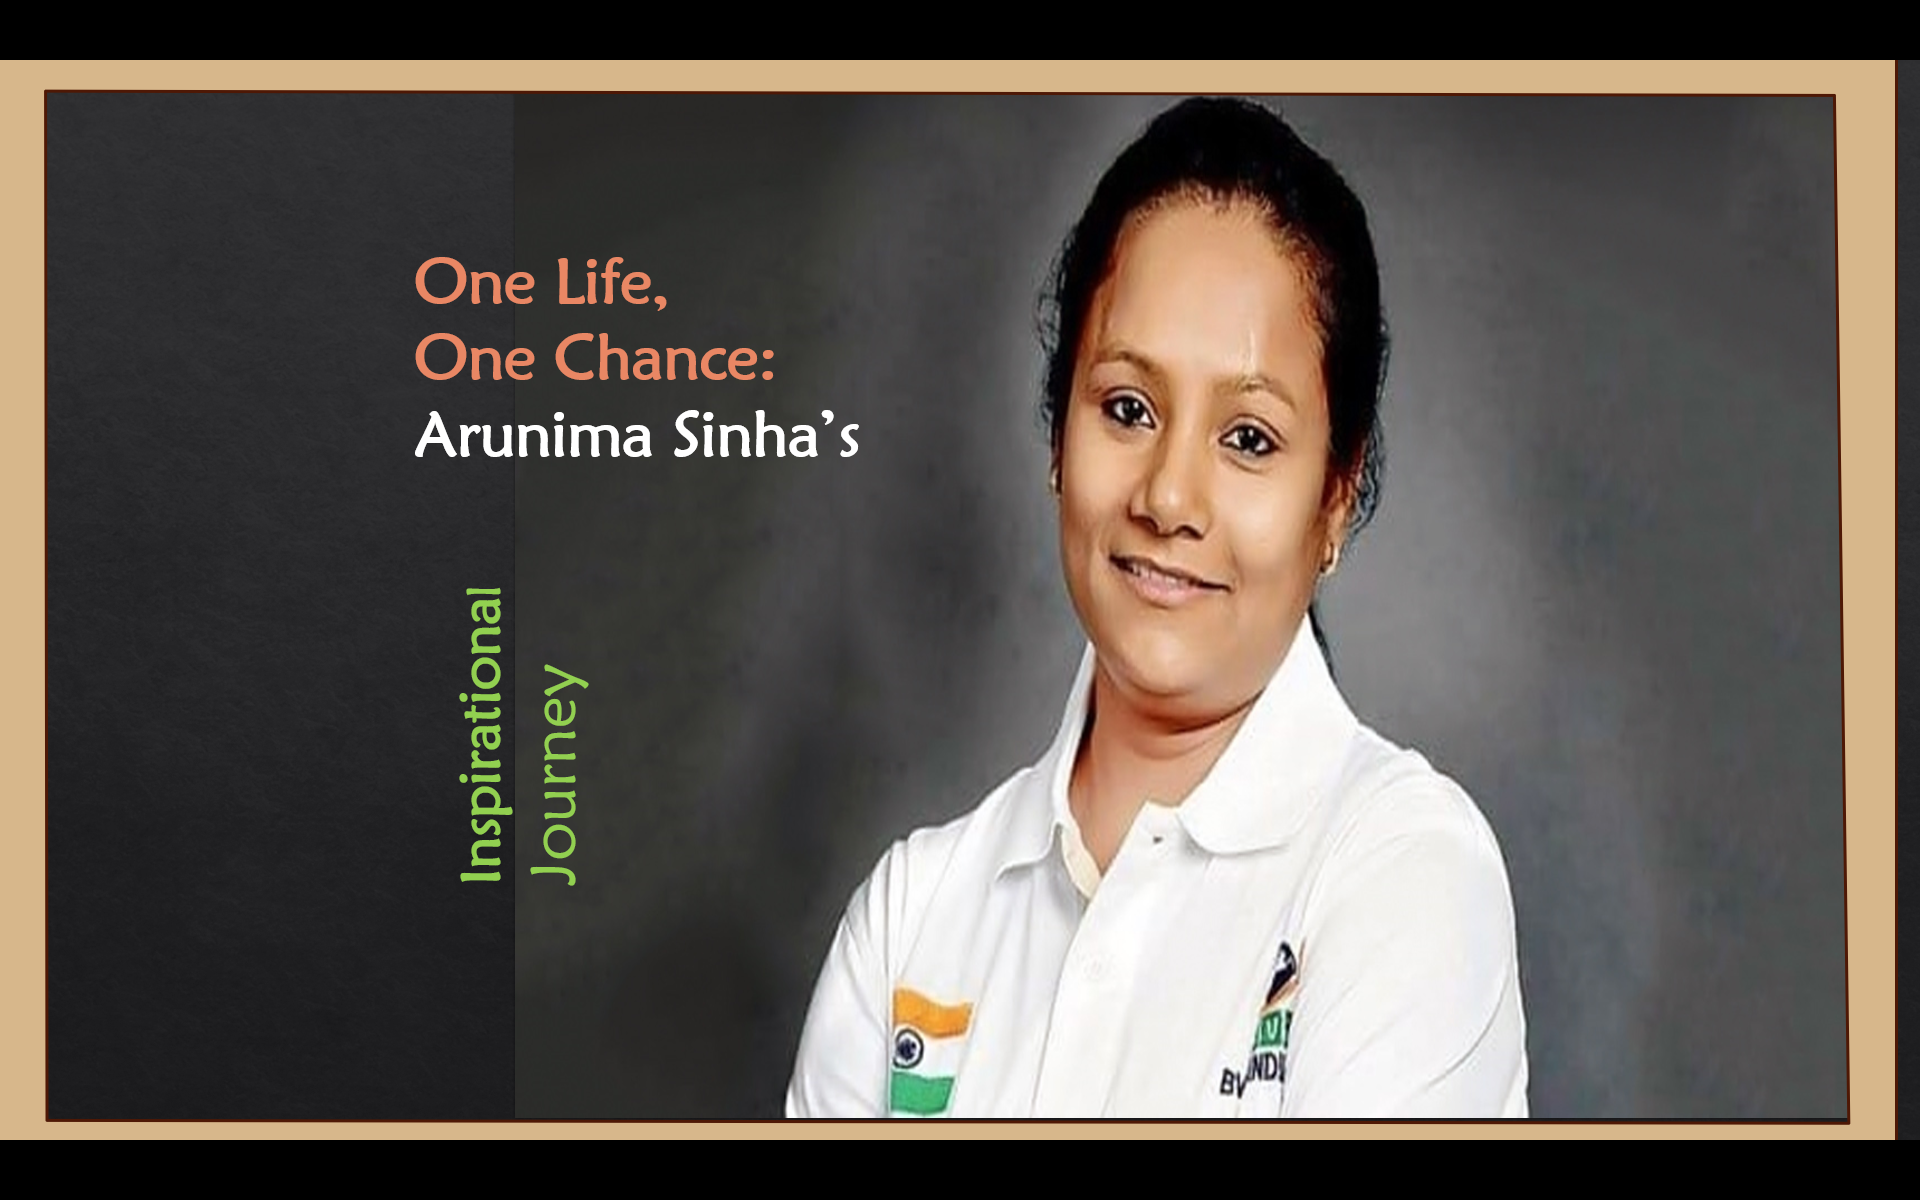 Arunima Sinha